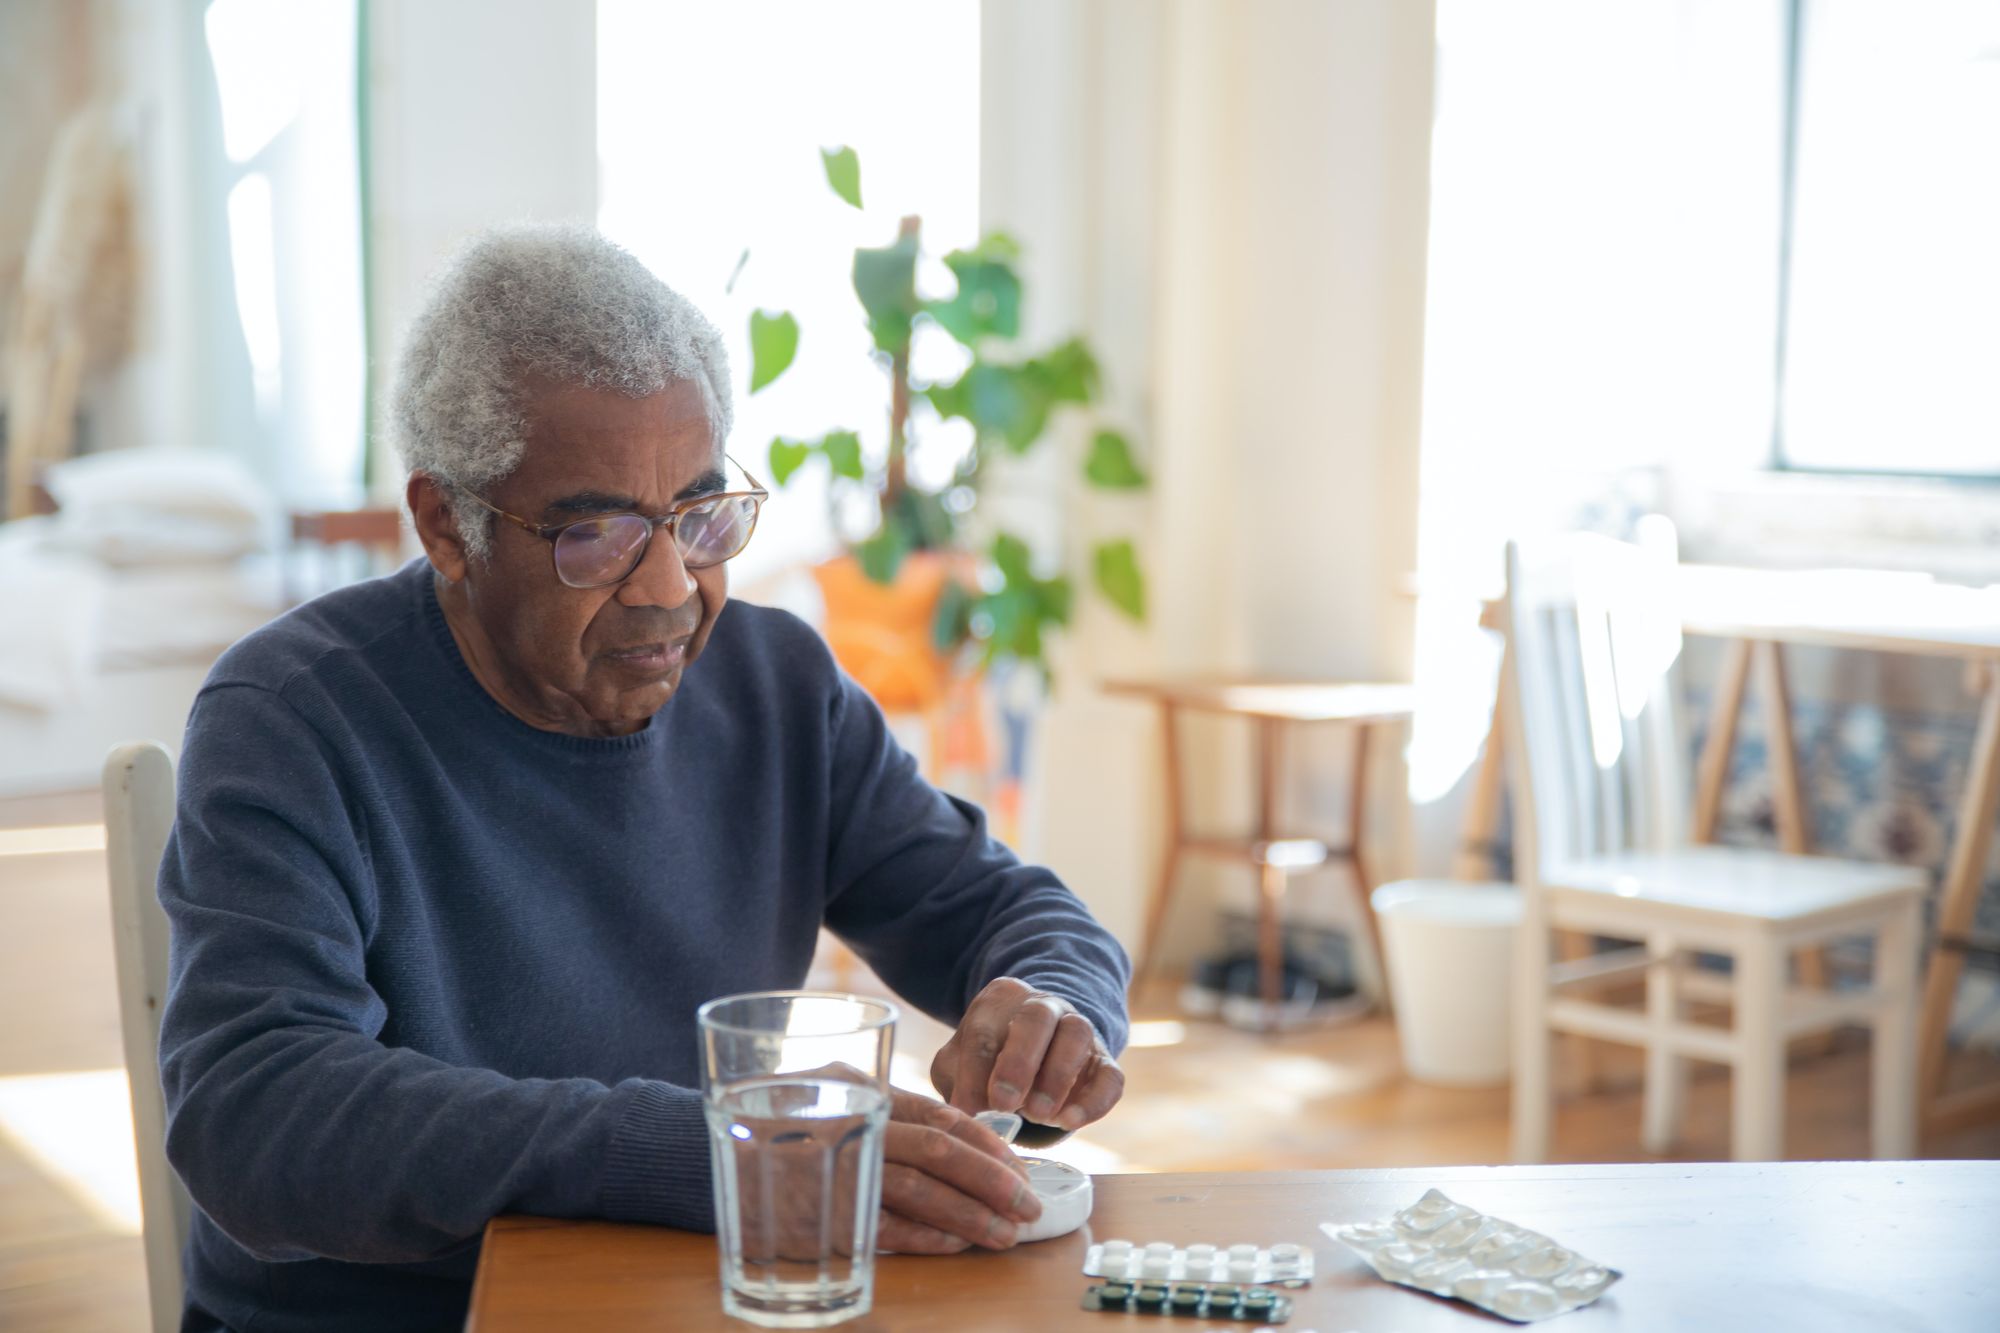 An elderly man using medications